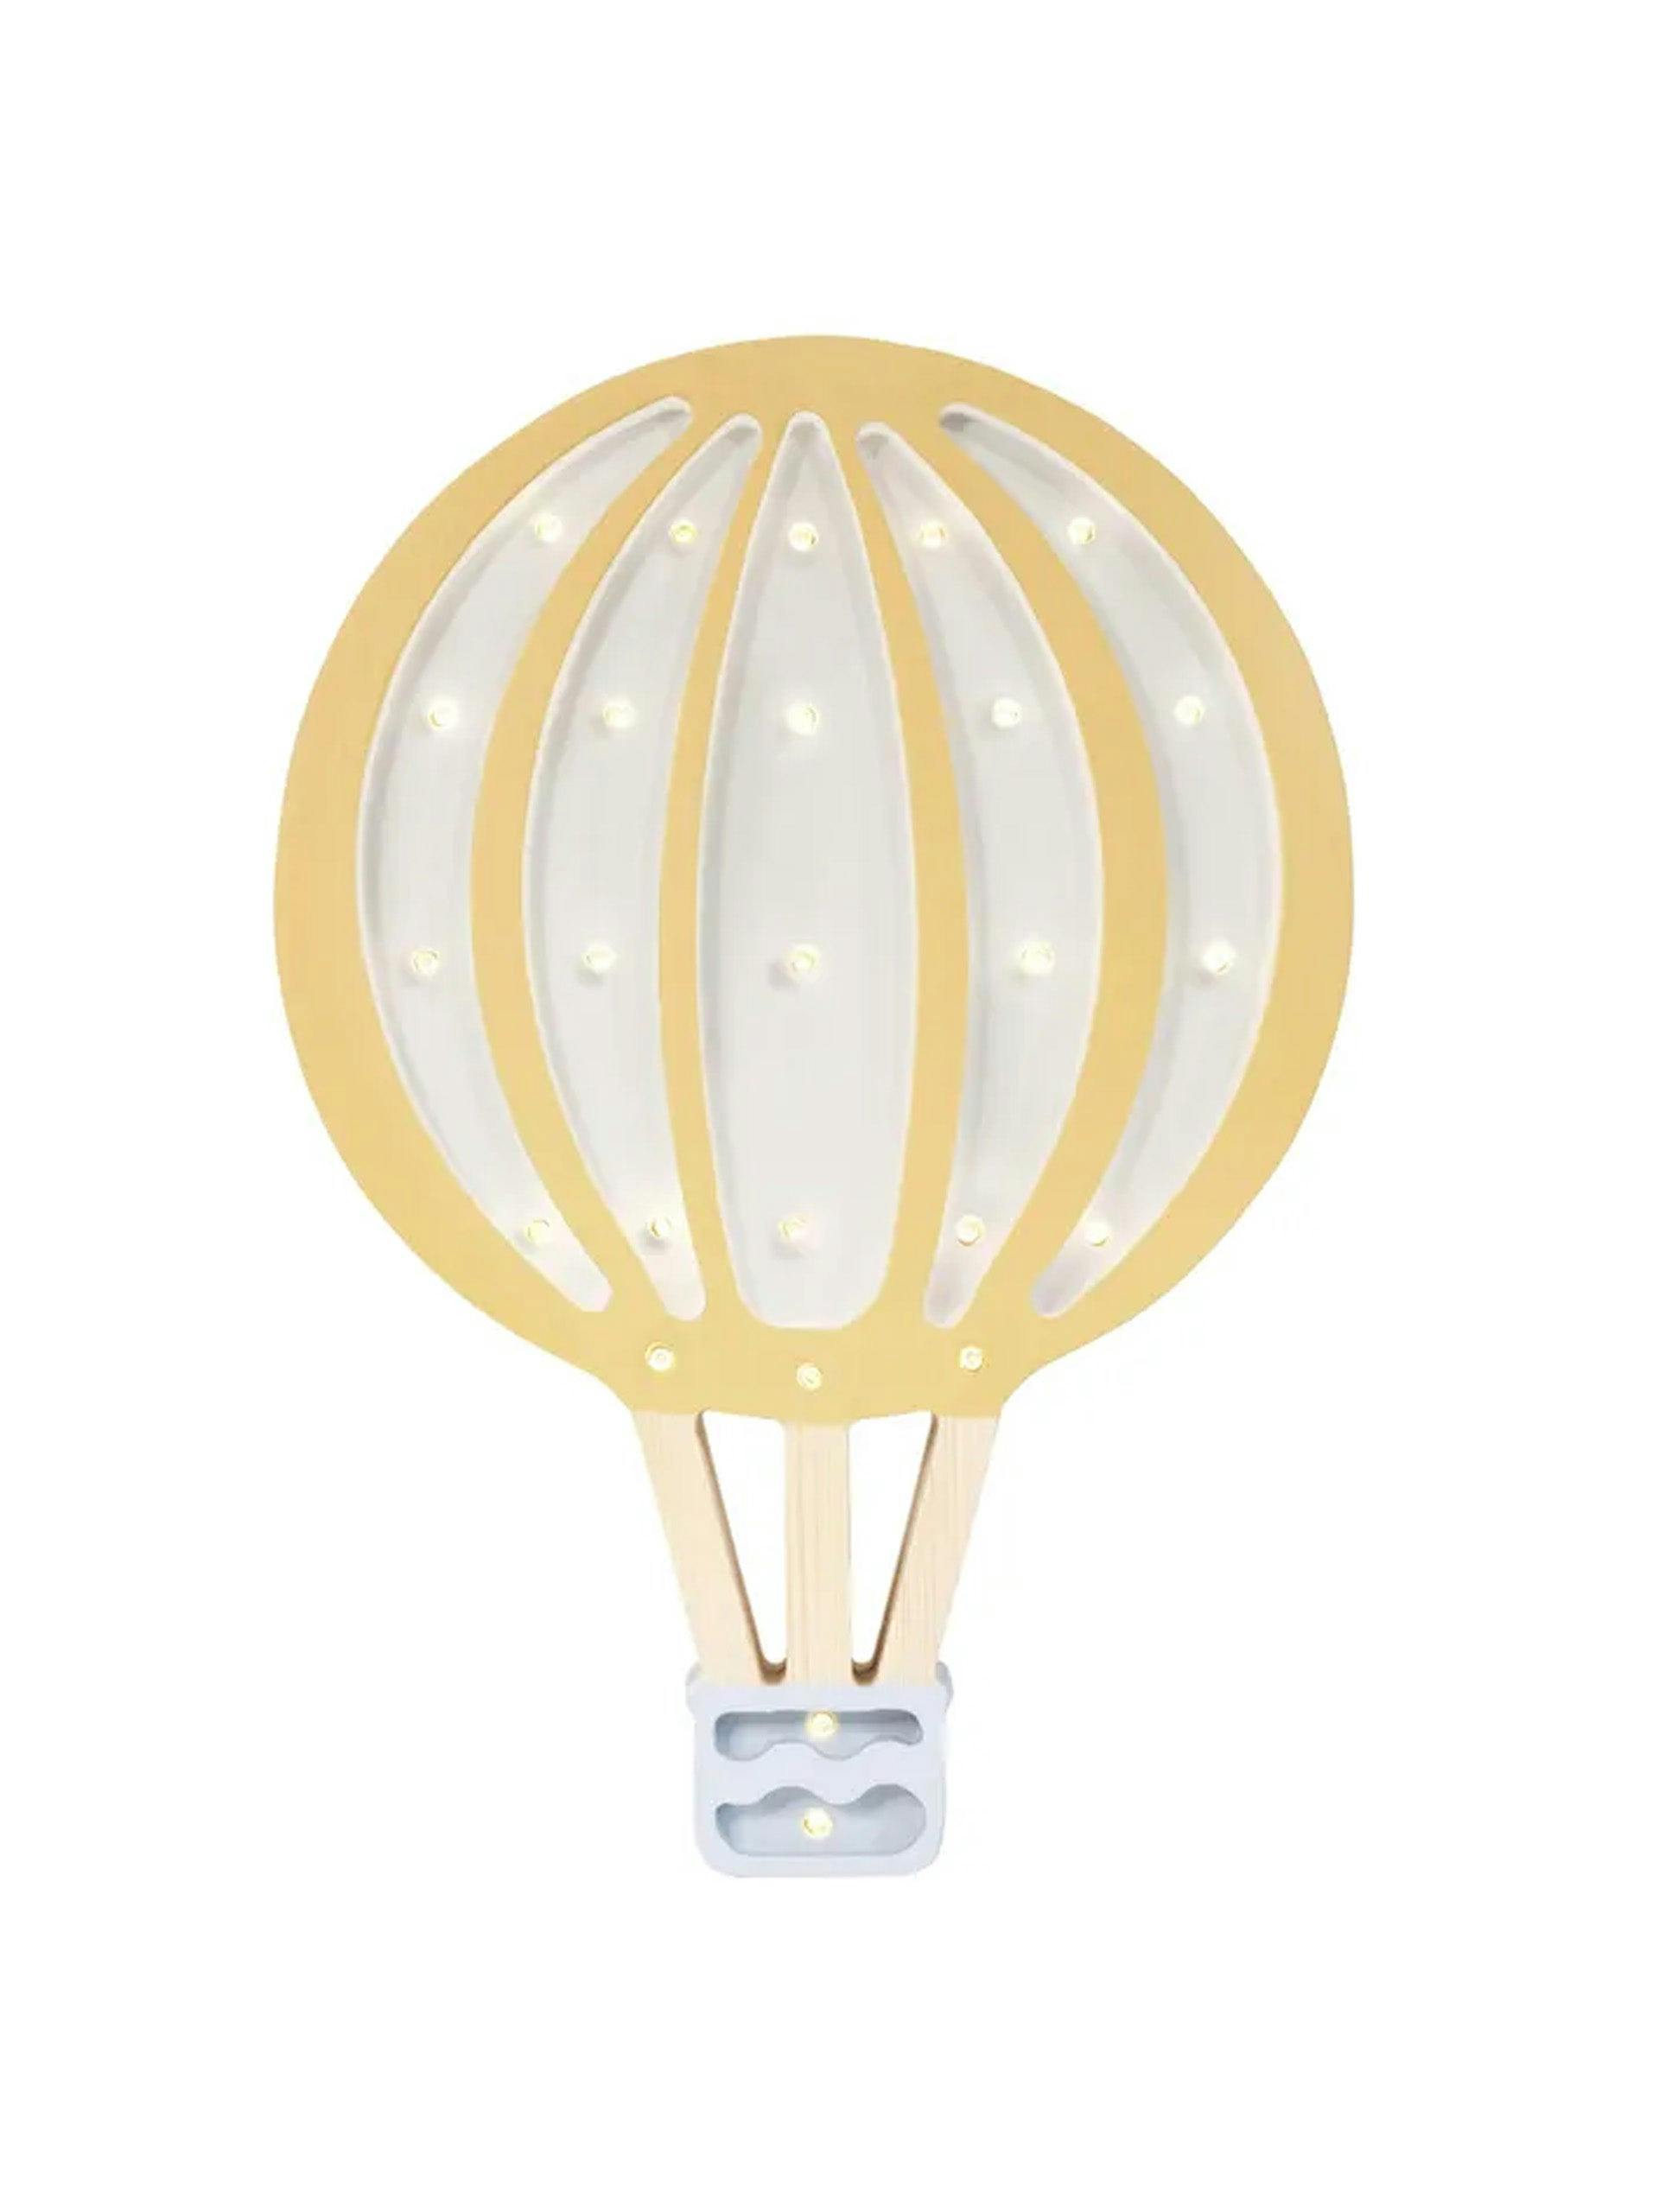 Hot-air balloon wall lamp